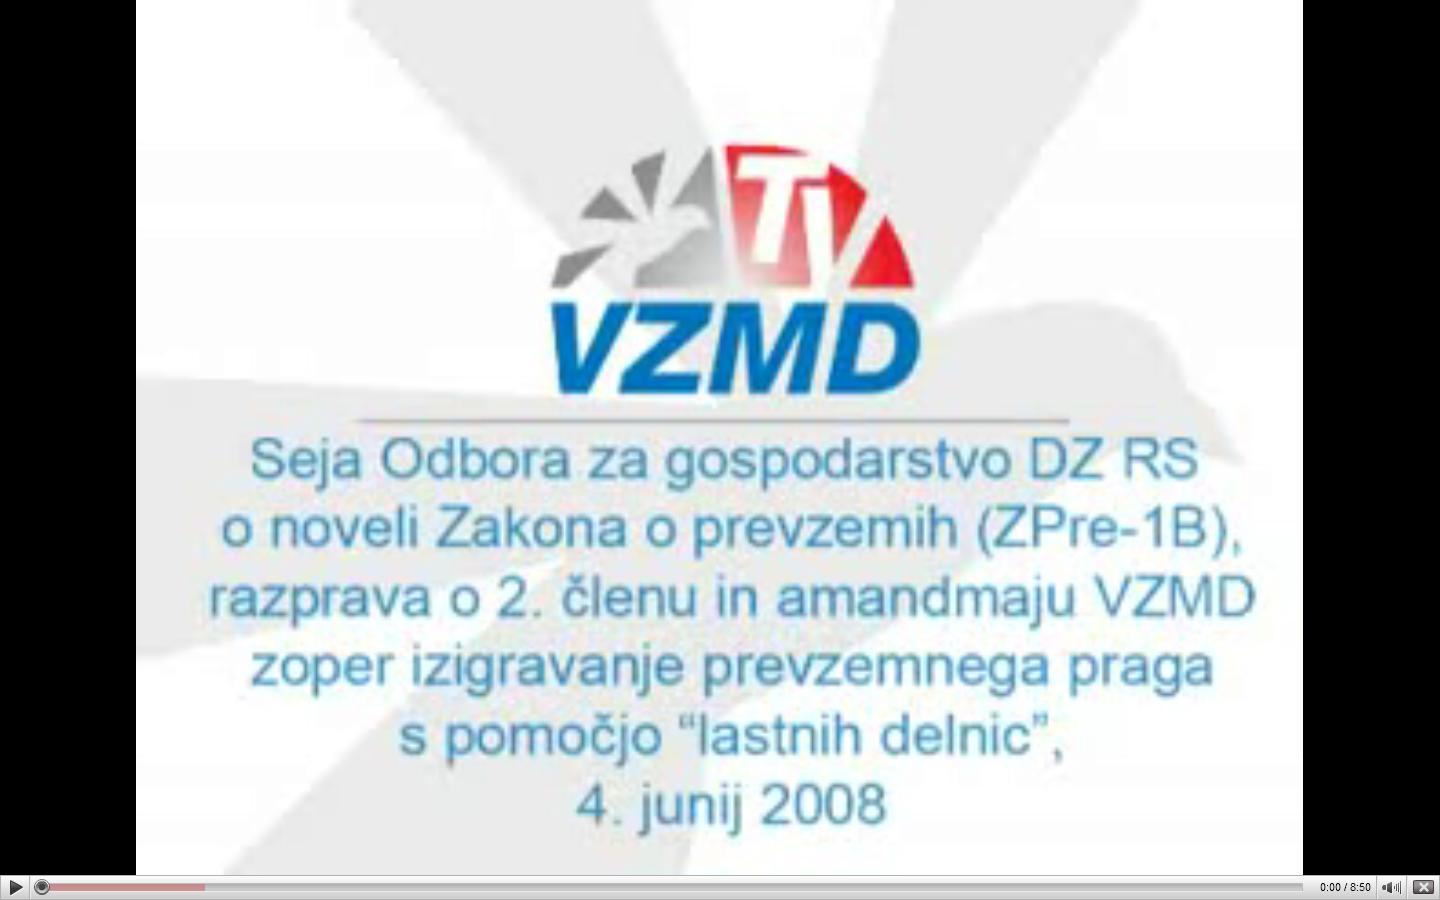 Zakon_o_prevzemih_VZMD_TV_4.JPG